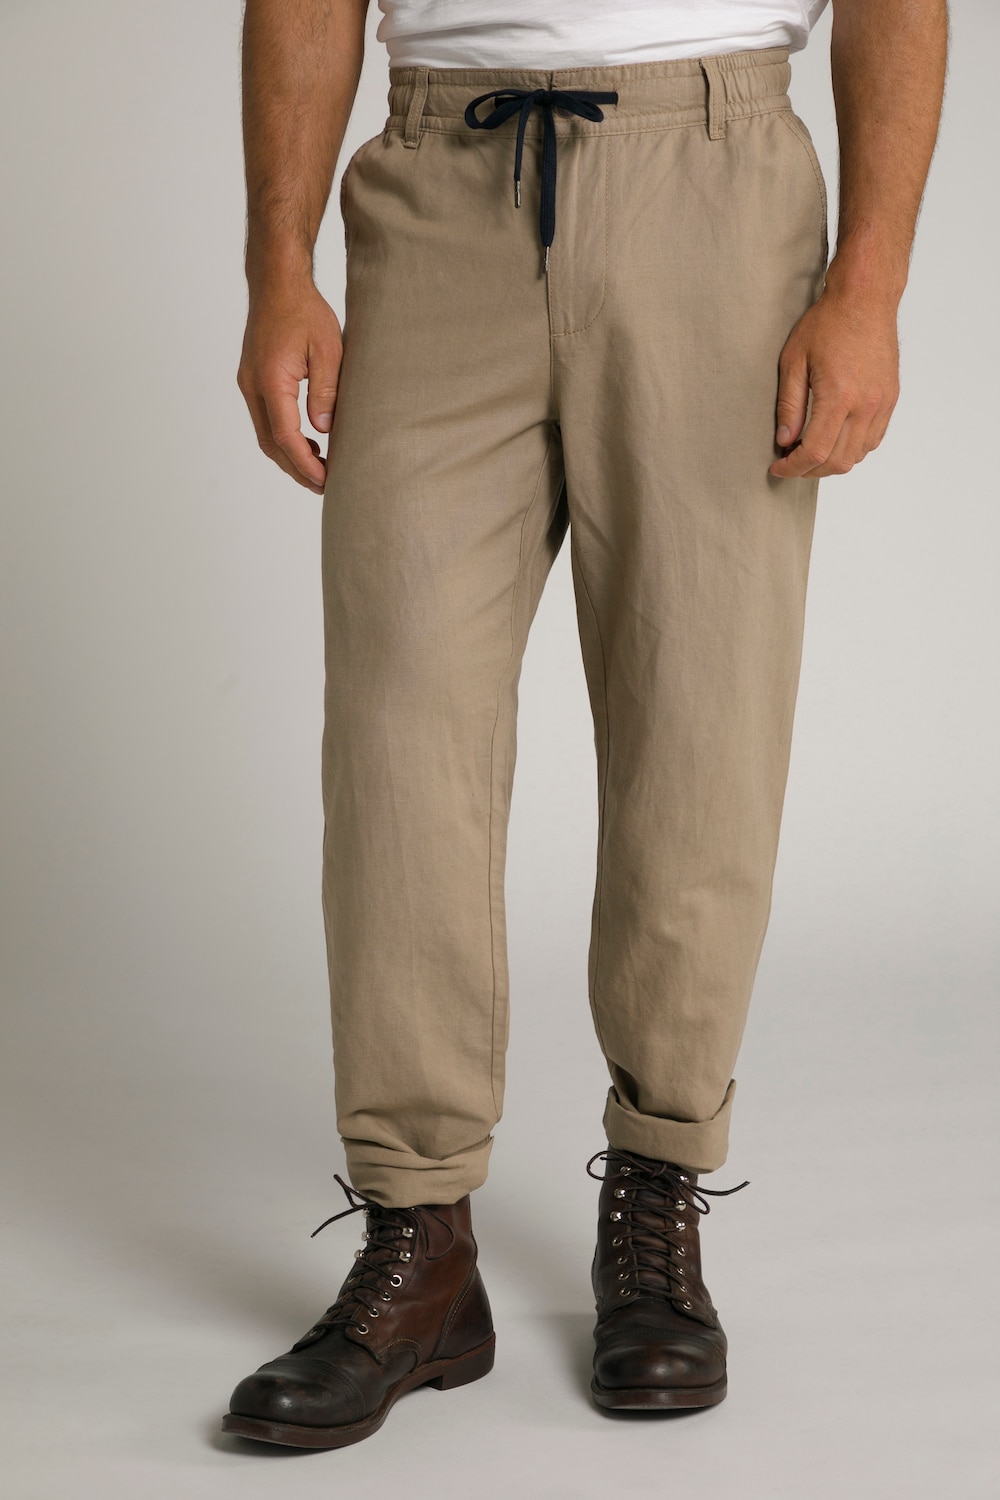 Plus Size Basic Fit Linen Blend Pants, Man, brown, size: 3XL, linen/cotton, JP1880